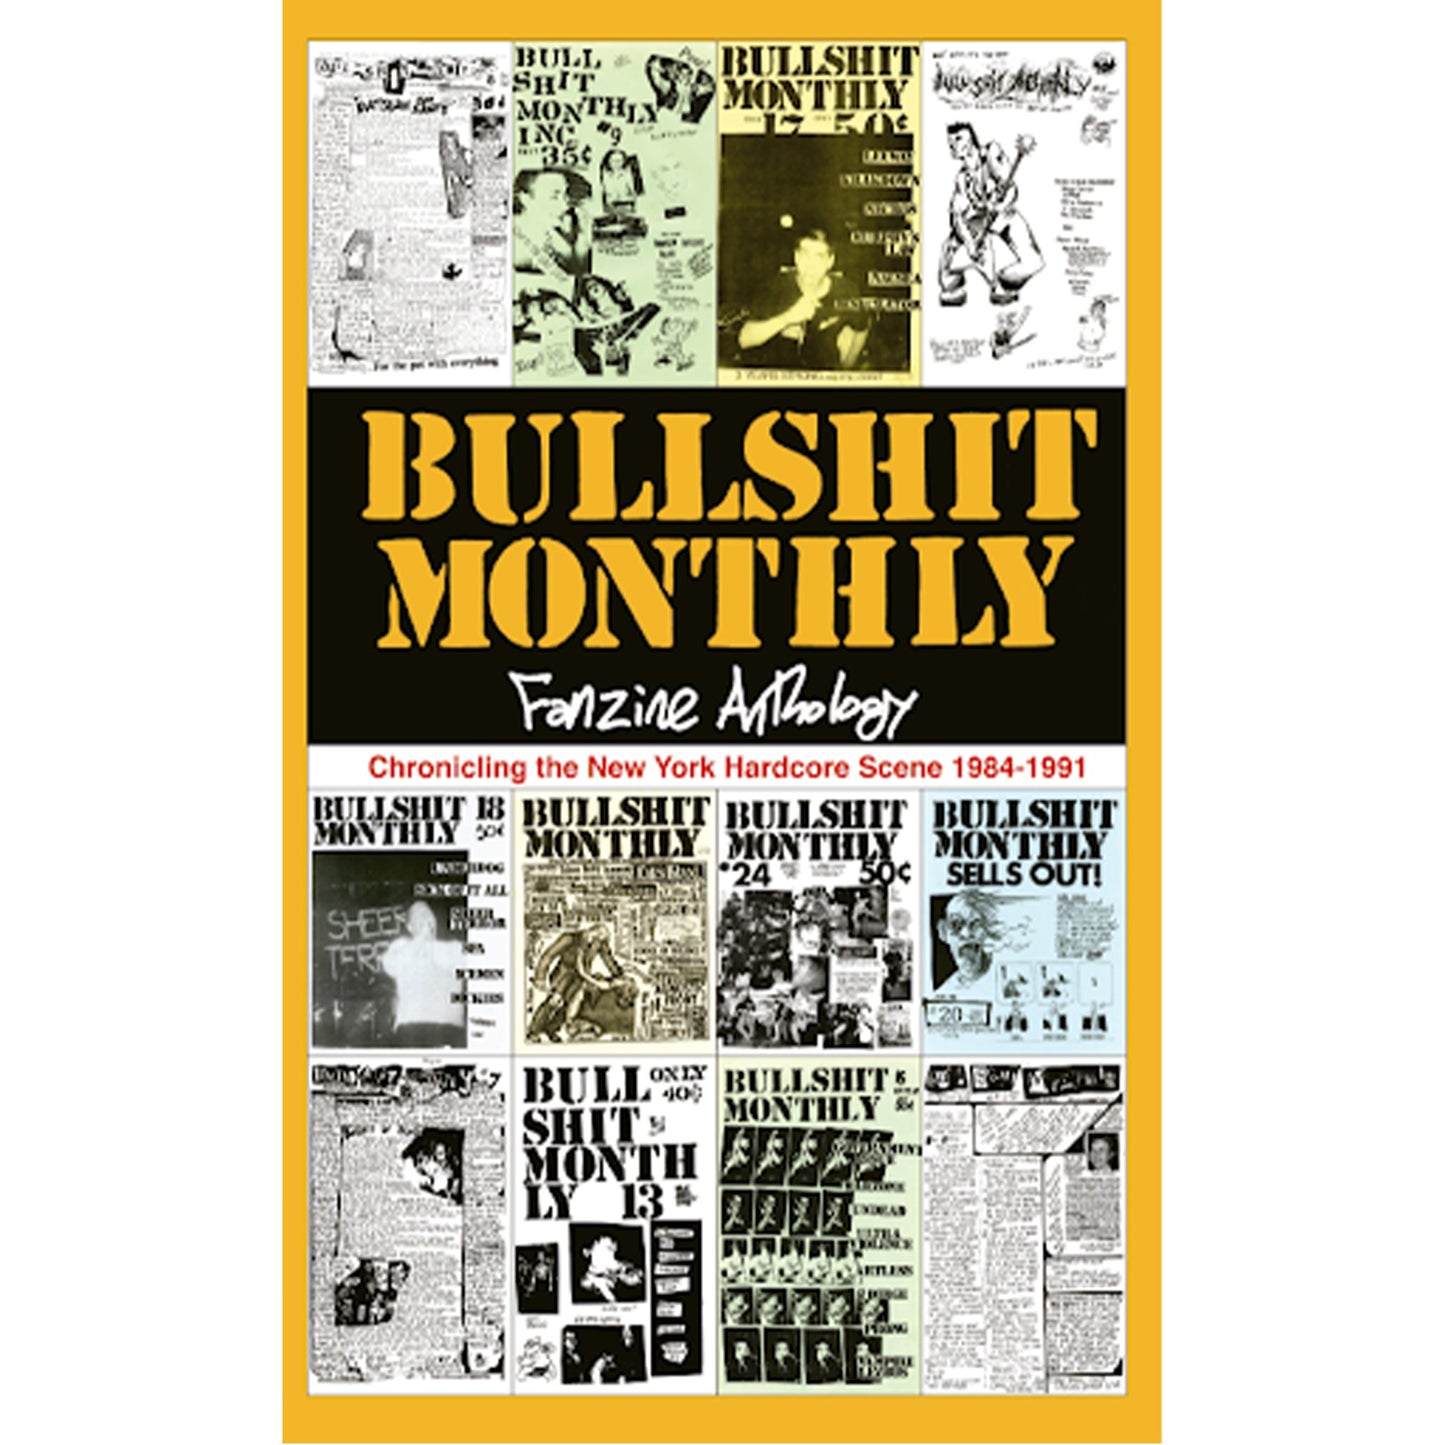 Bullshit Monthly, Fanzine Anthology